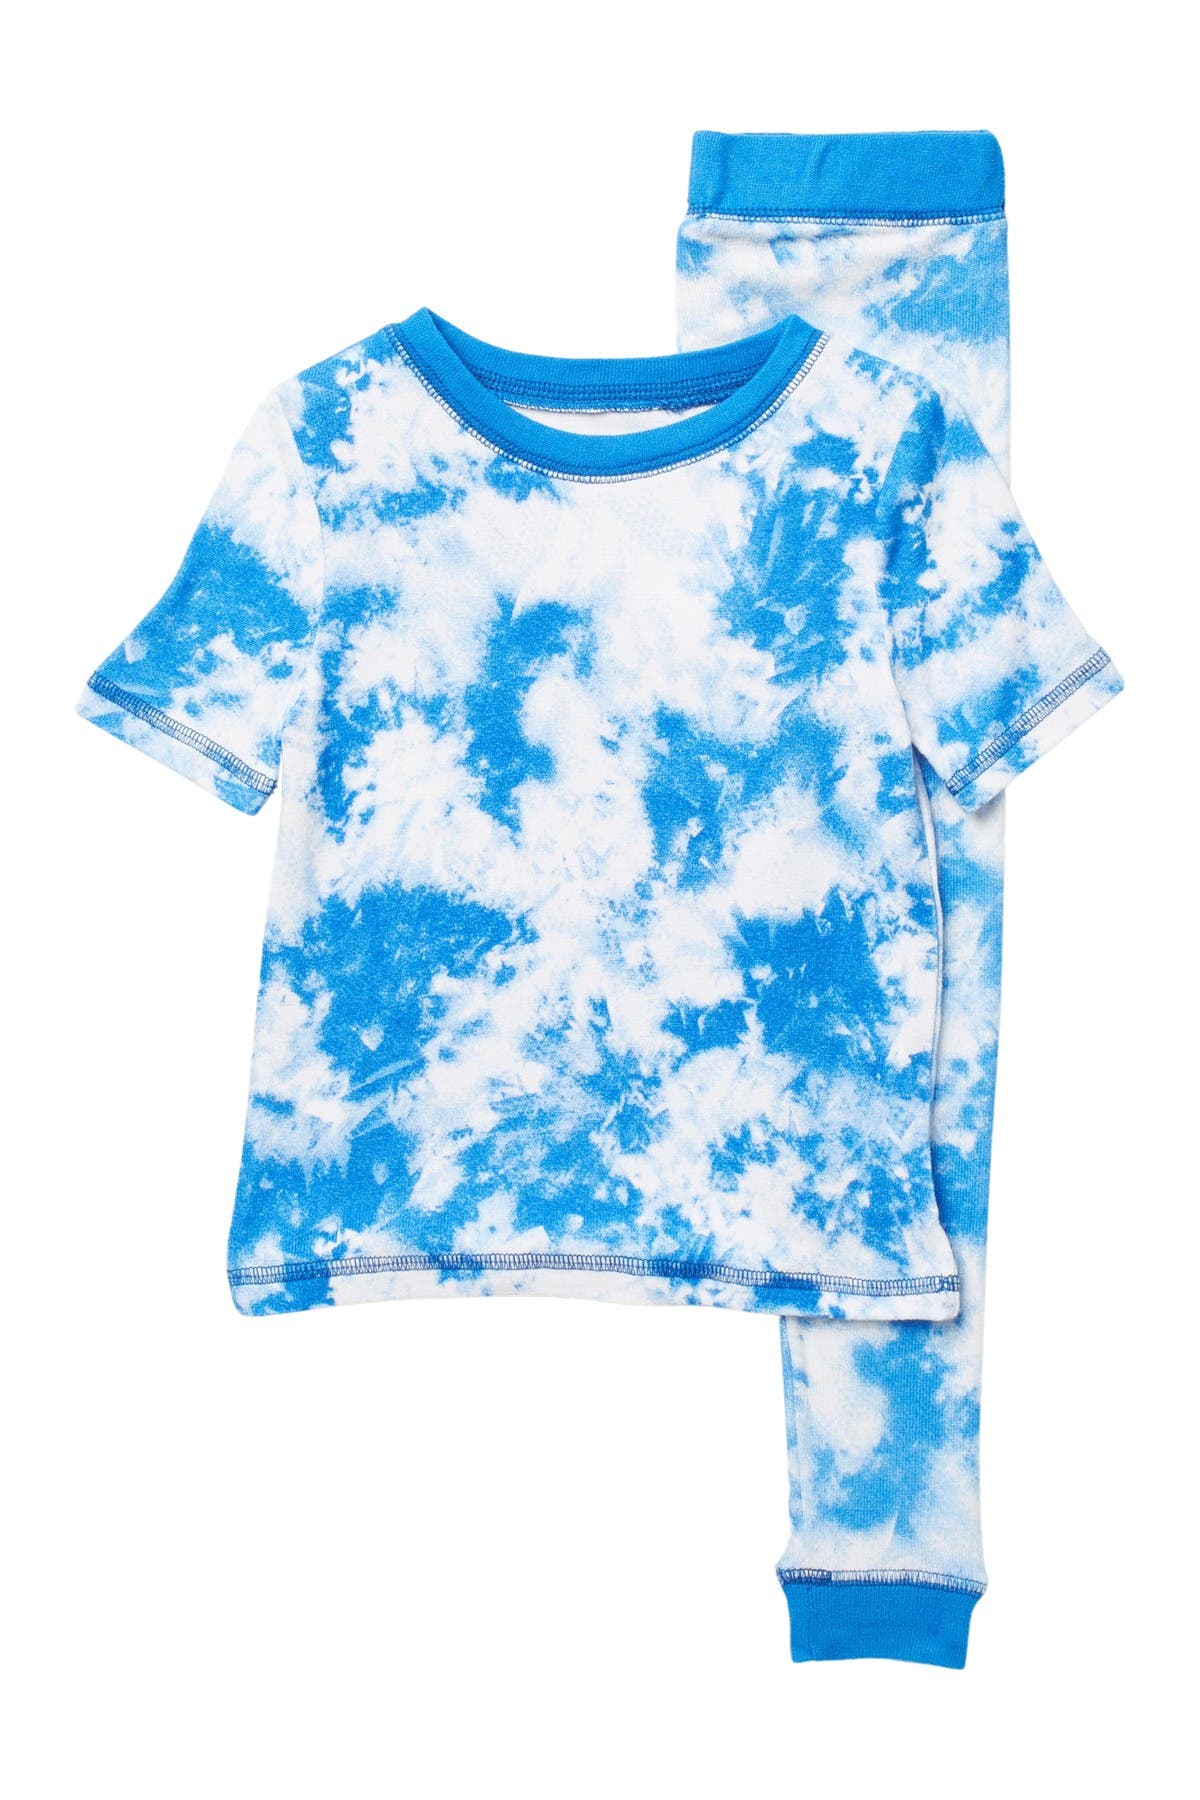 Cloud Nine Kids' Tie-dye Pajama Set In Blue